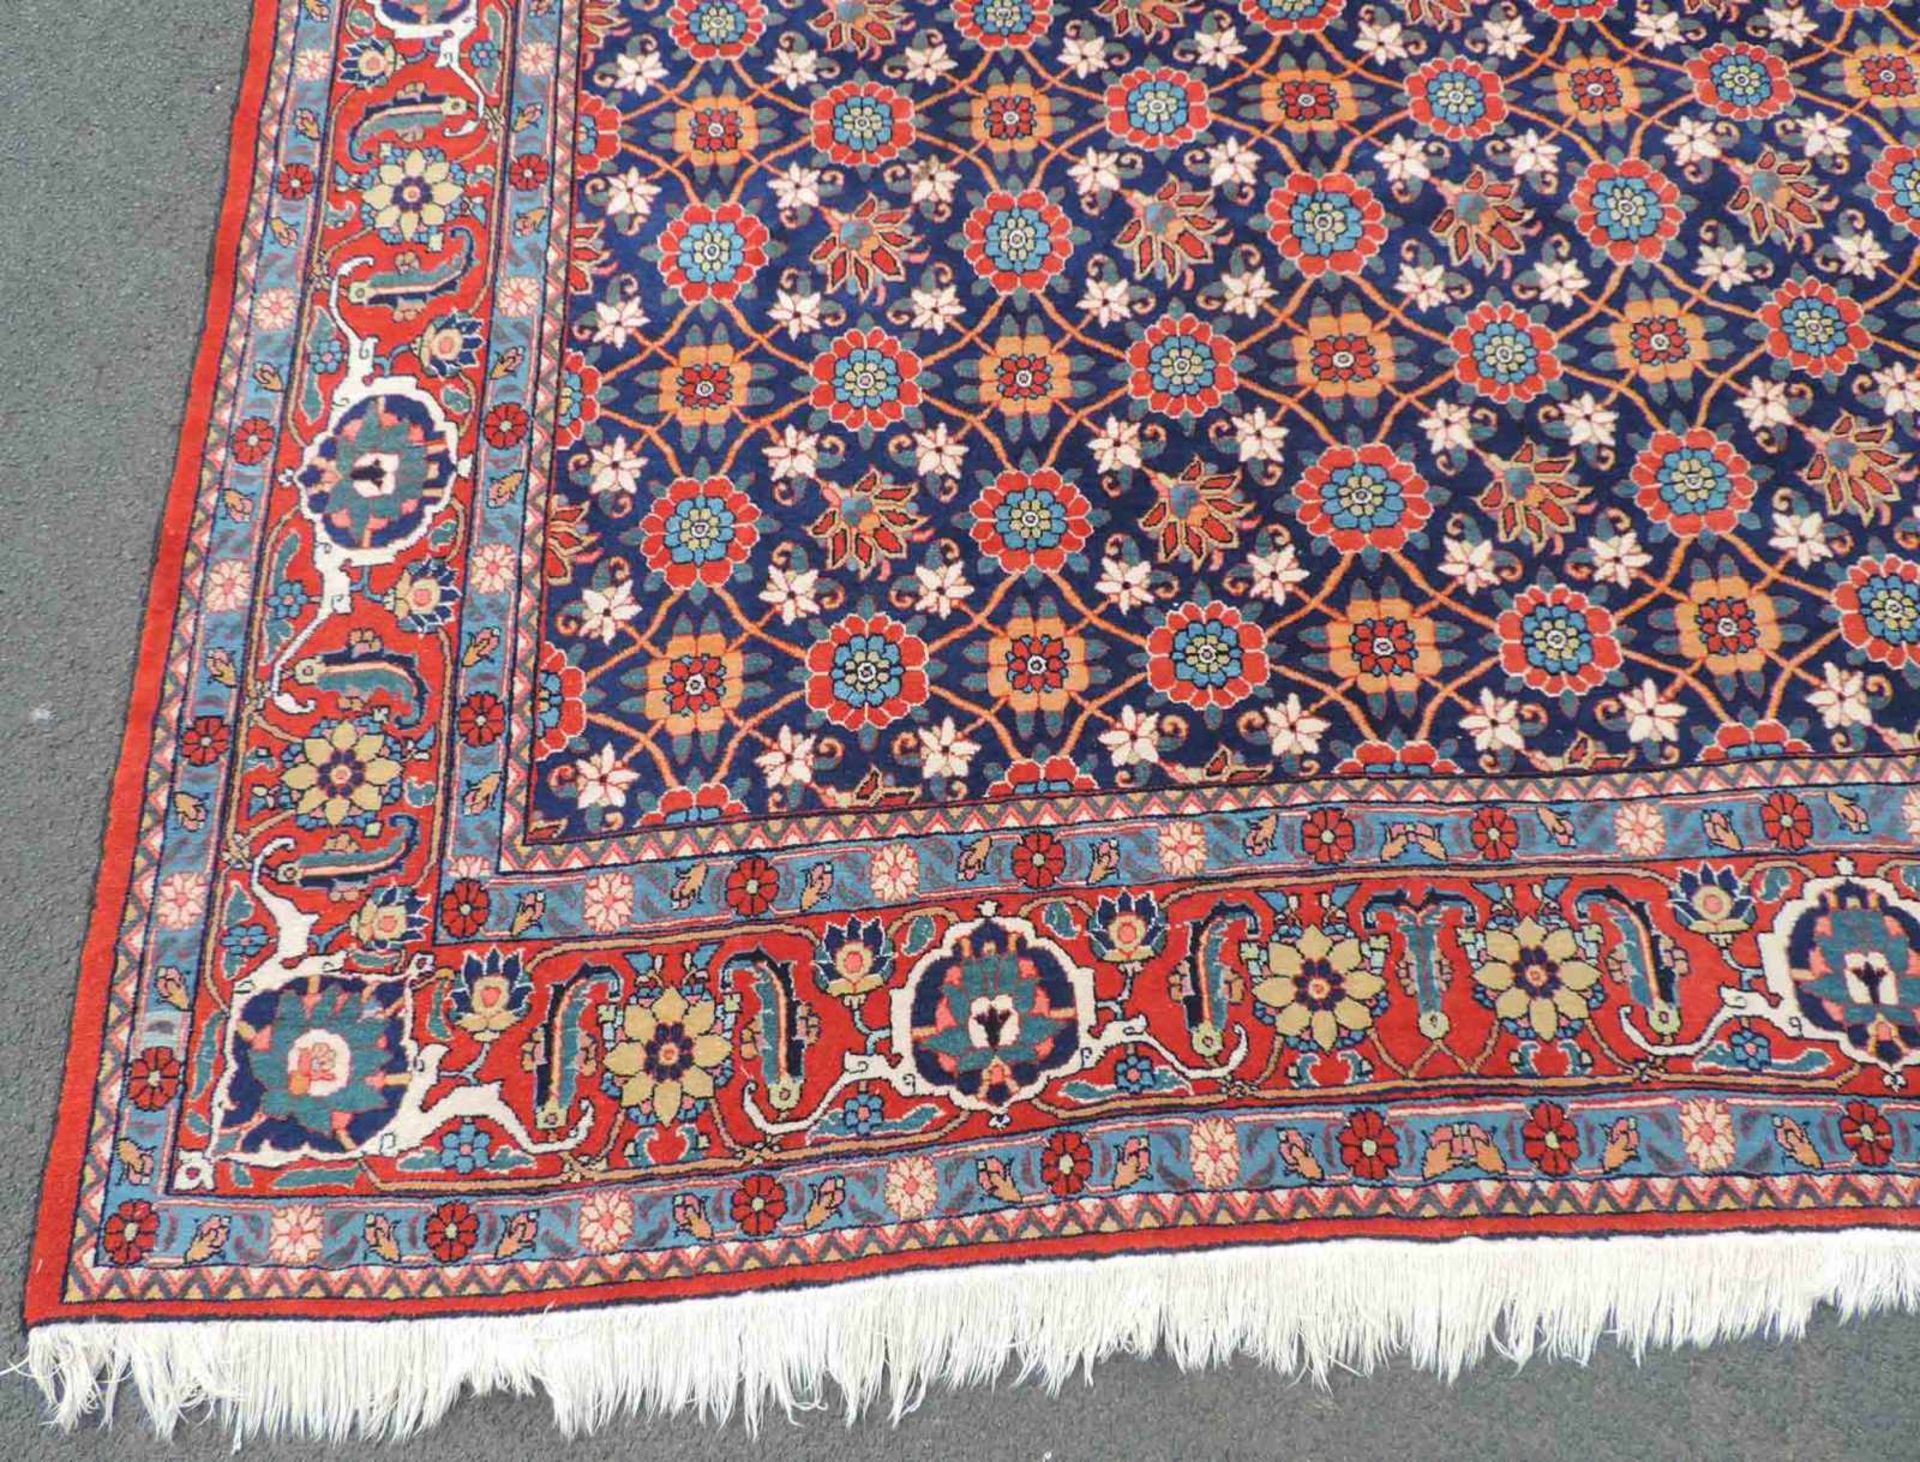 Weramin Manfakturteppich. Iran, alt, um 1940. 308 cm x 210 cm. Handgeknüpft. Wolle auf Baumwolle. - Bild 2 aus 7